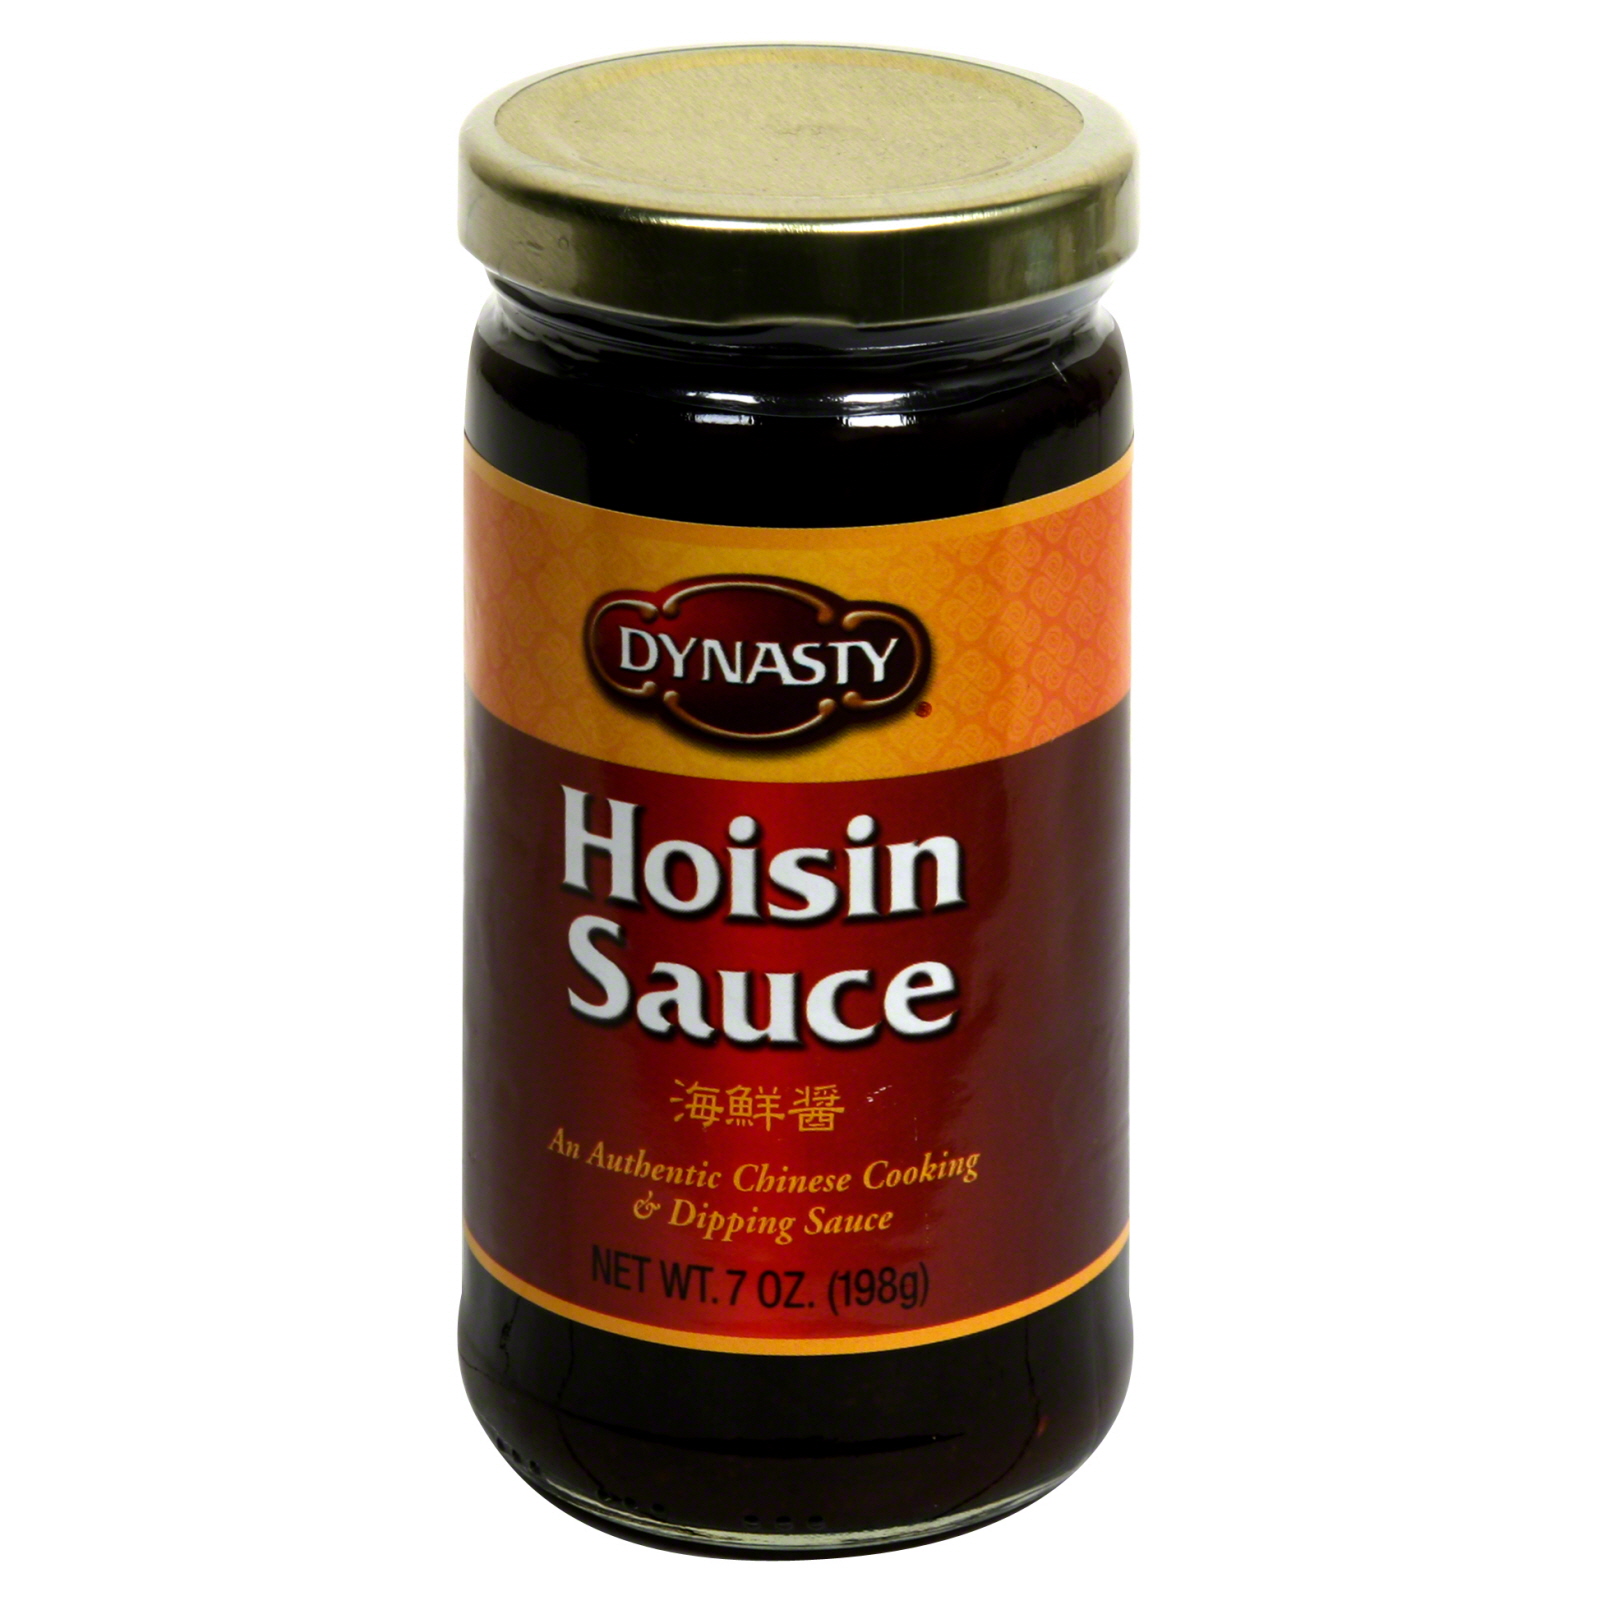 Dynasty Hoisin Sauce, 7 oz (198 g)